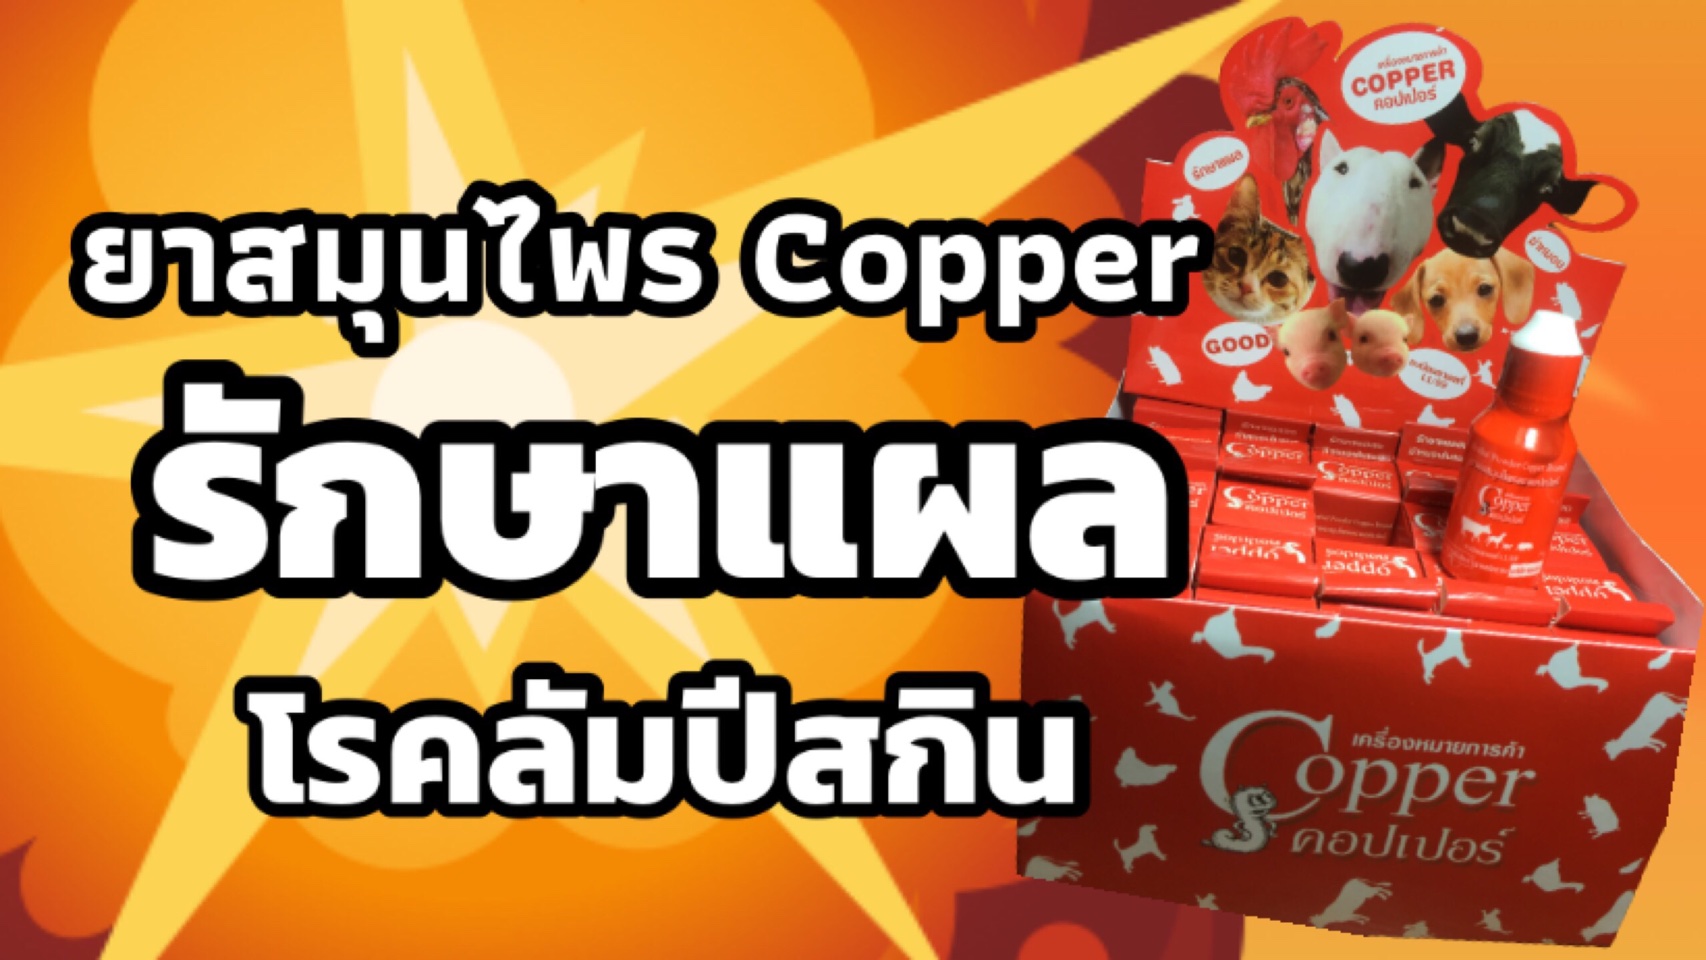 ลองของจริง! : ยาสมุนไพร Copper รักษาแผลโรคลัมปีสกิน  